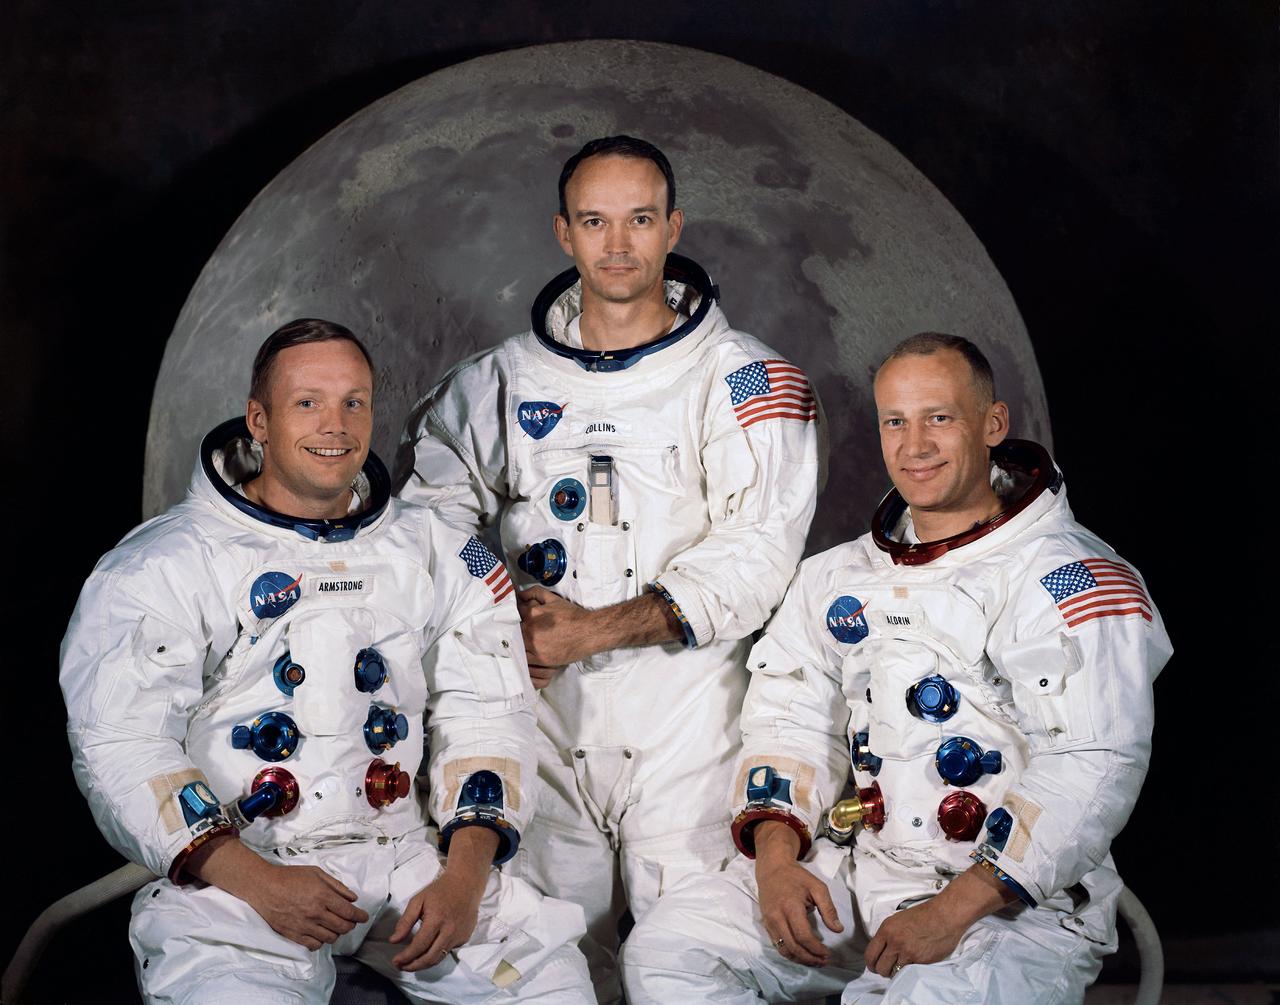 Tripulación del Apolo 11